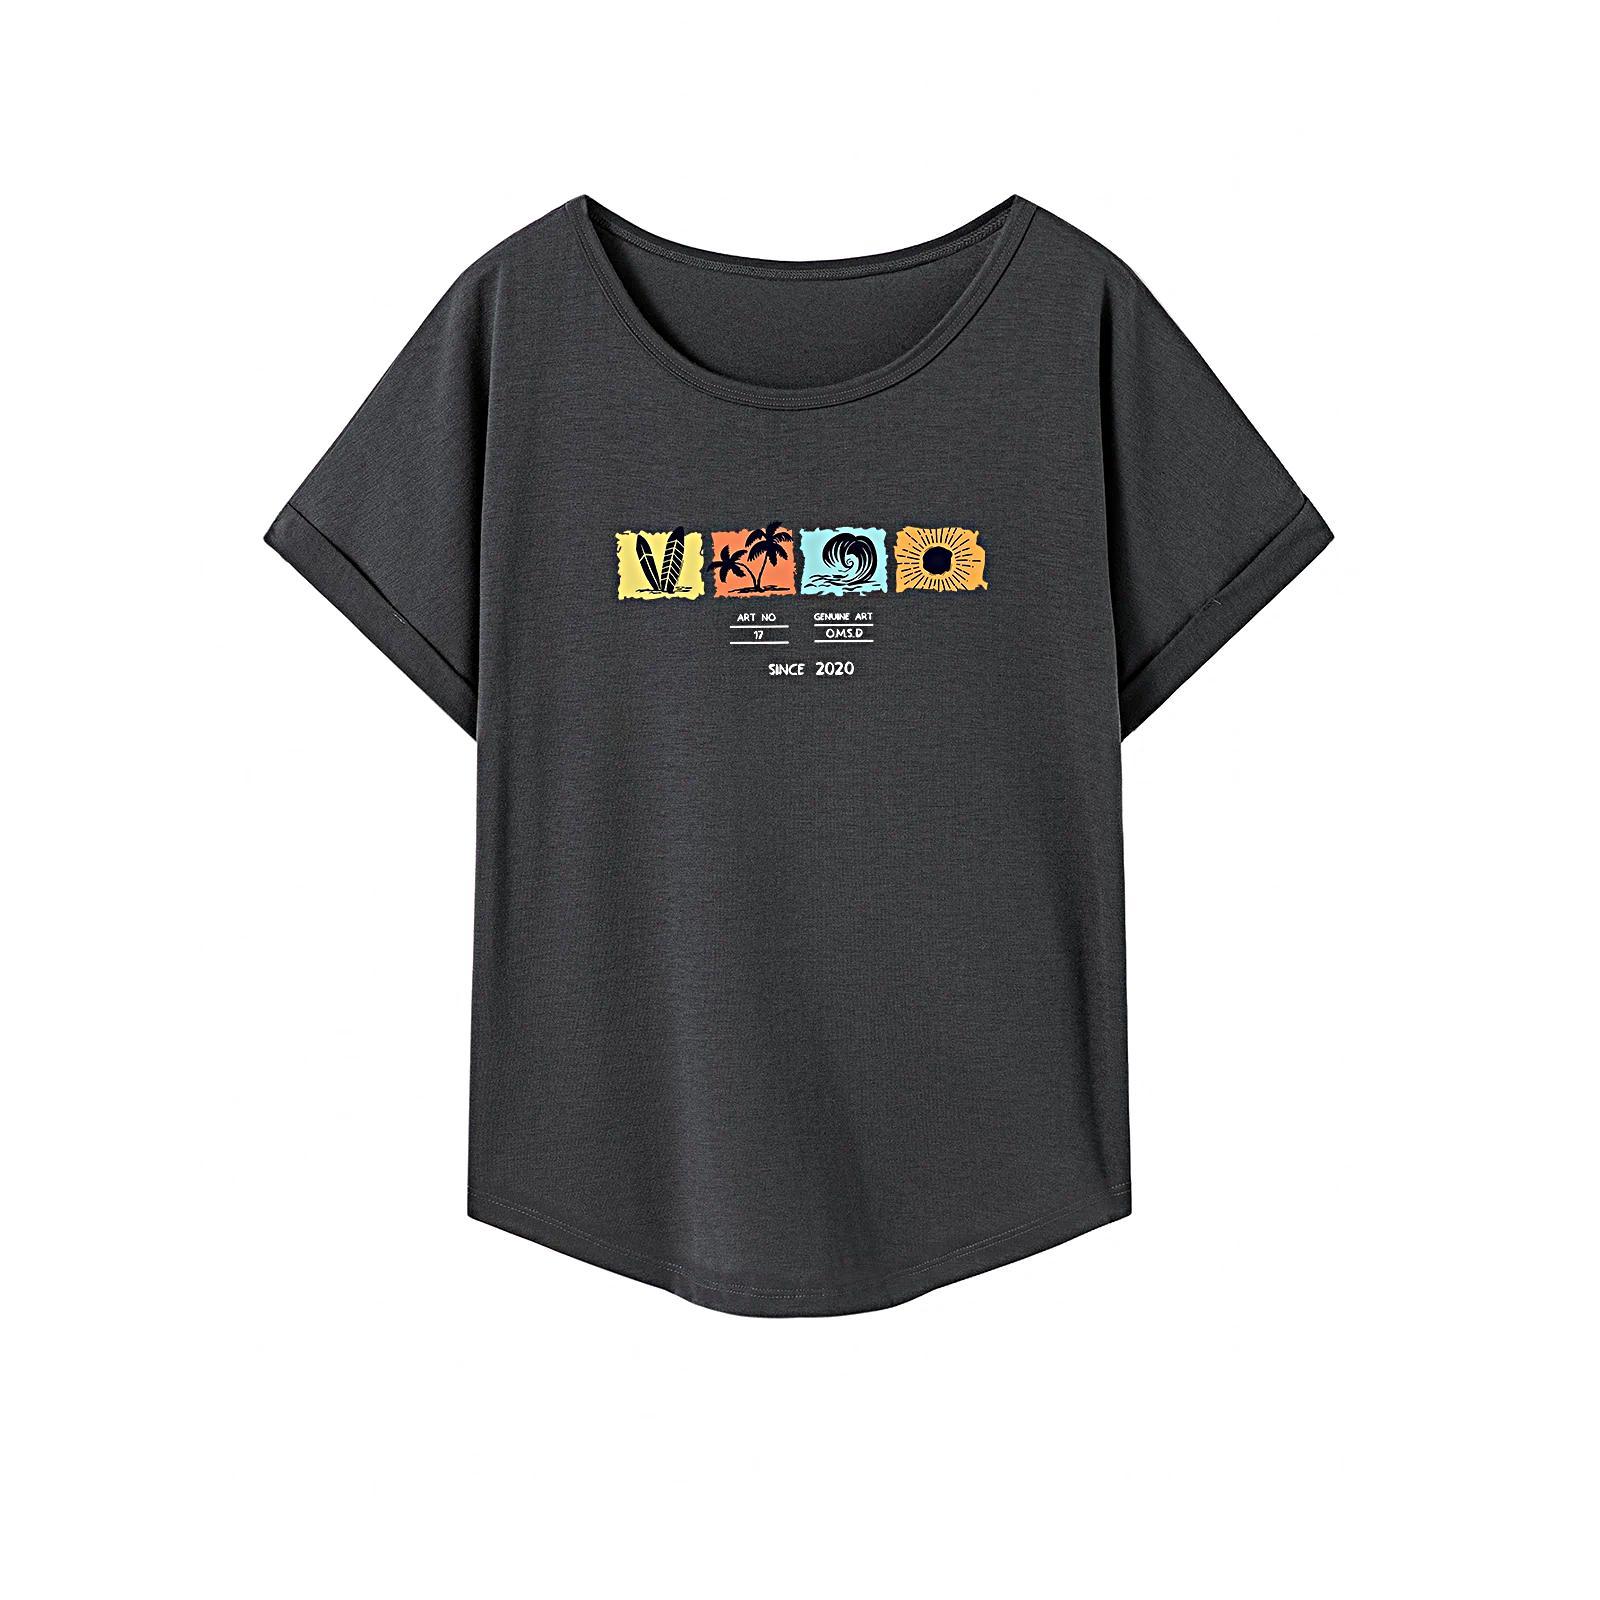 T Shirt for Women Summer Lightweight Crew Neck Shirt for Beach Sports Office L